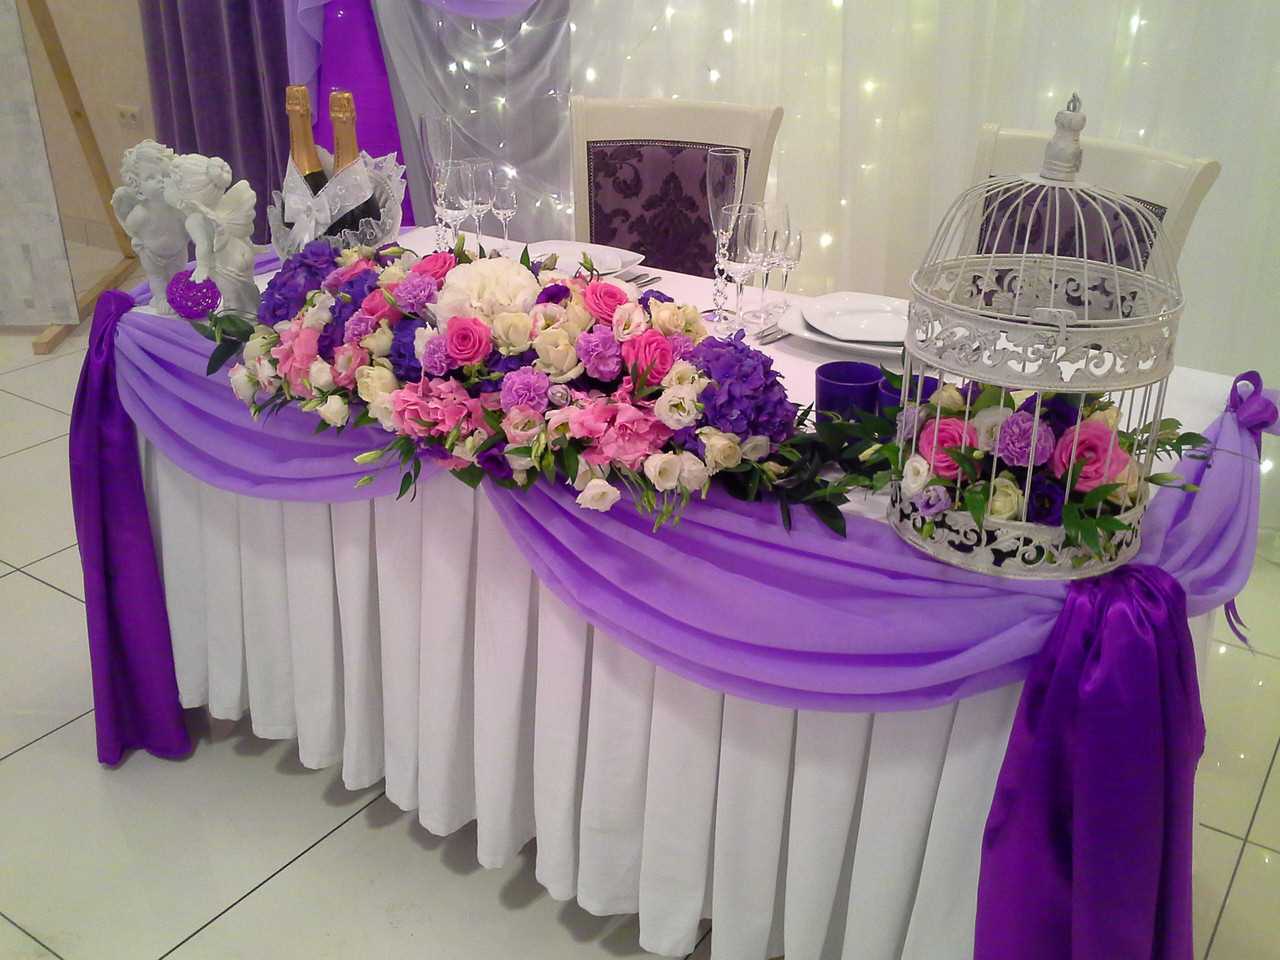 Décoration de table de mariage avec composition florale